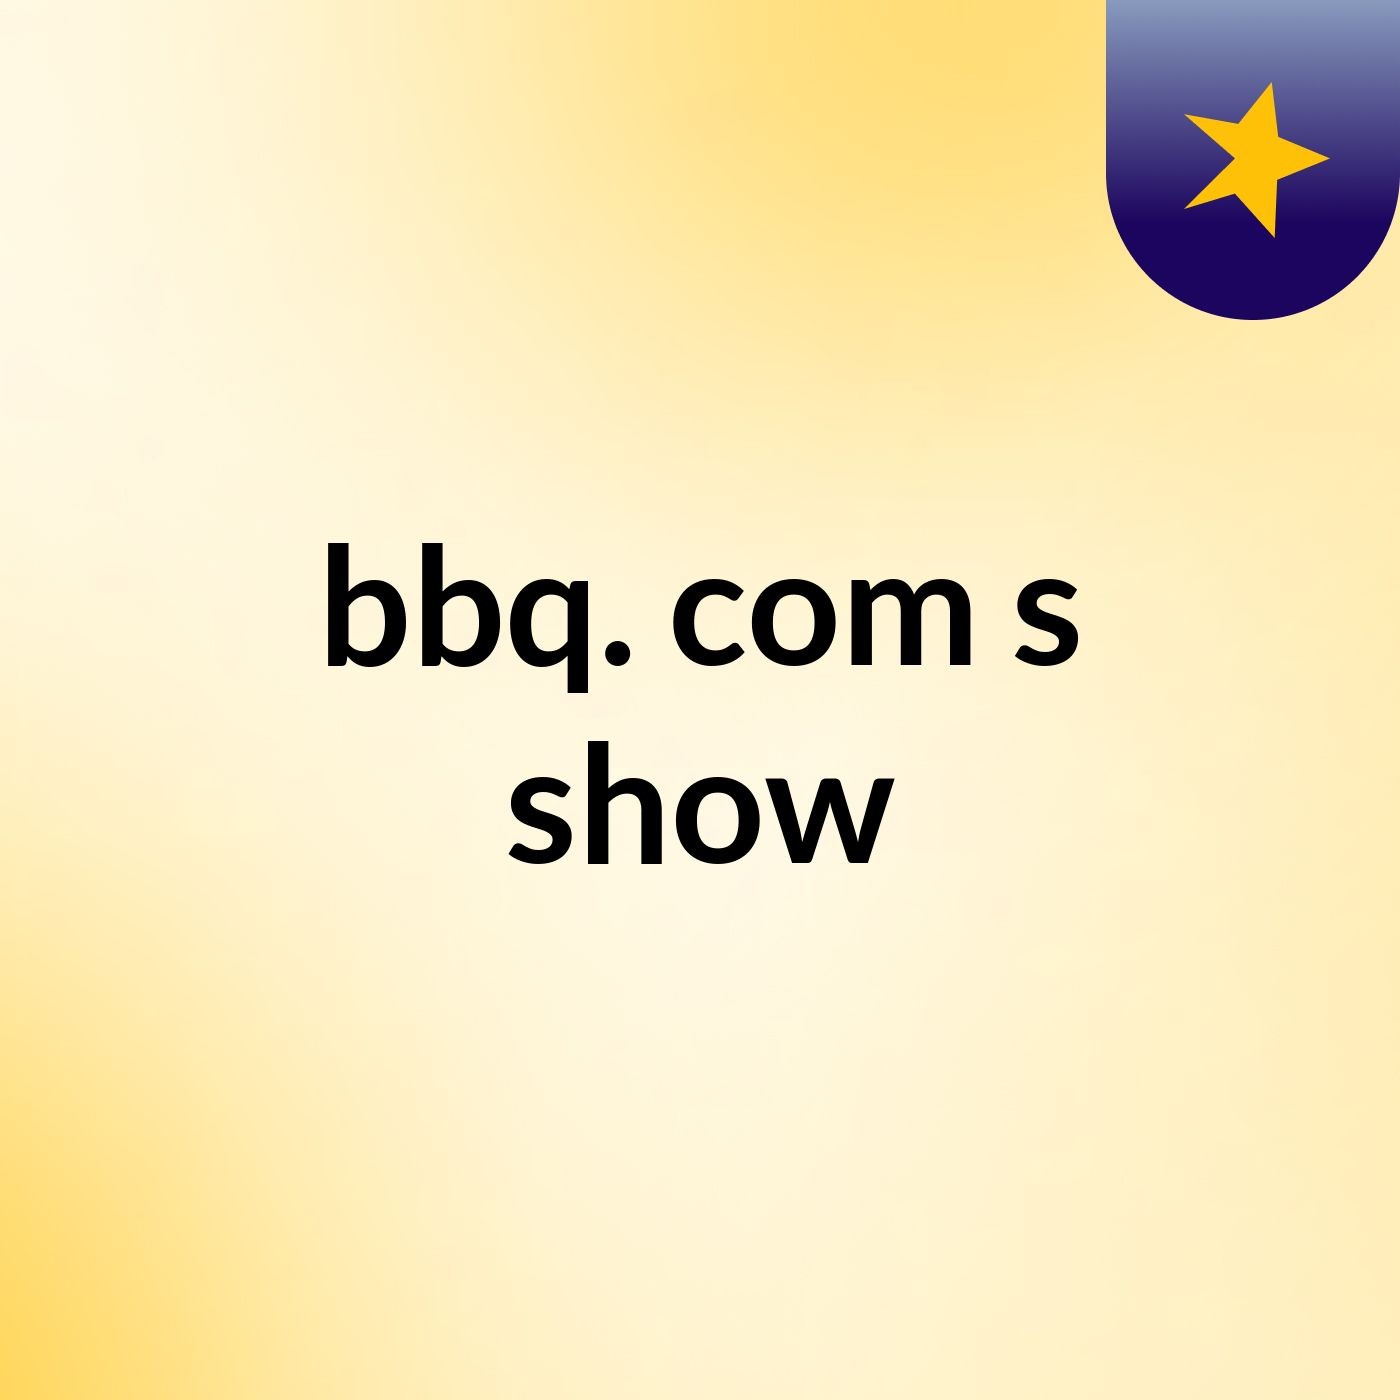 bbq. com's show